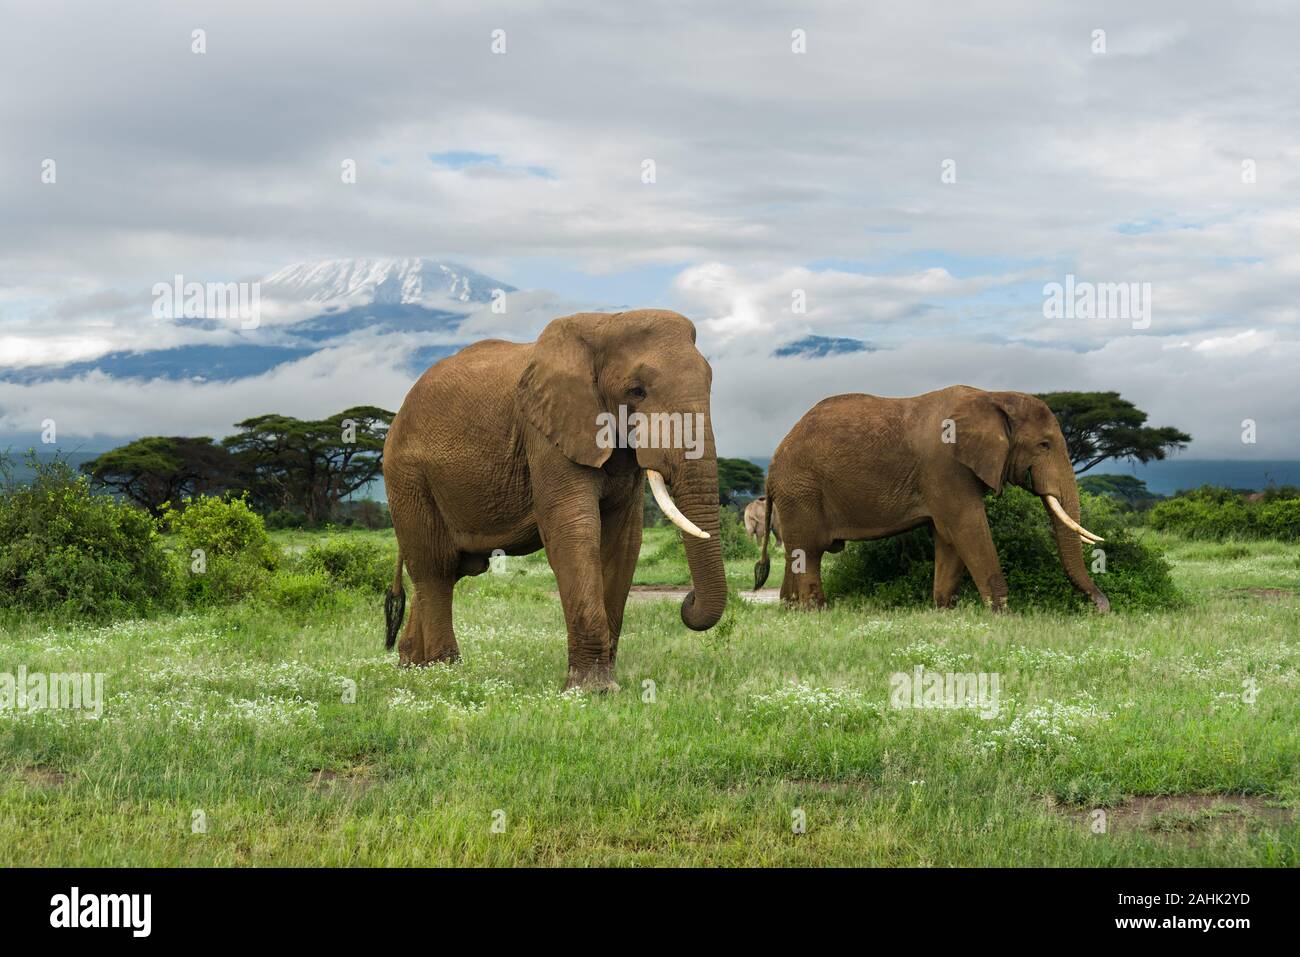 African bush elephants (loxodonta africana) with Mount Kilimanjaro in background, Amboseli National Park, Kenya Stock Photo